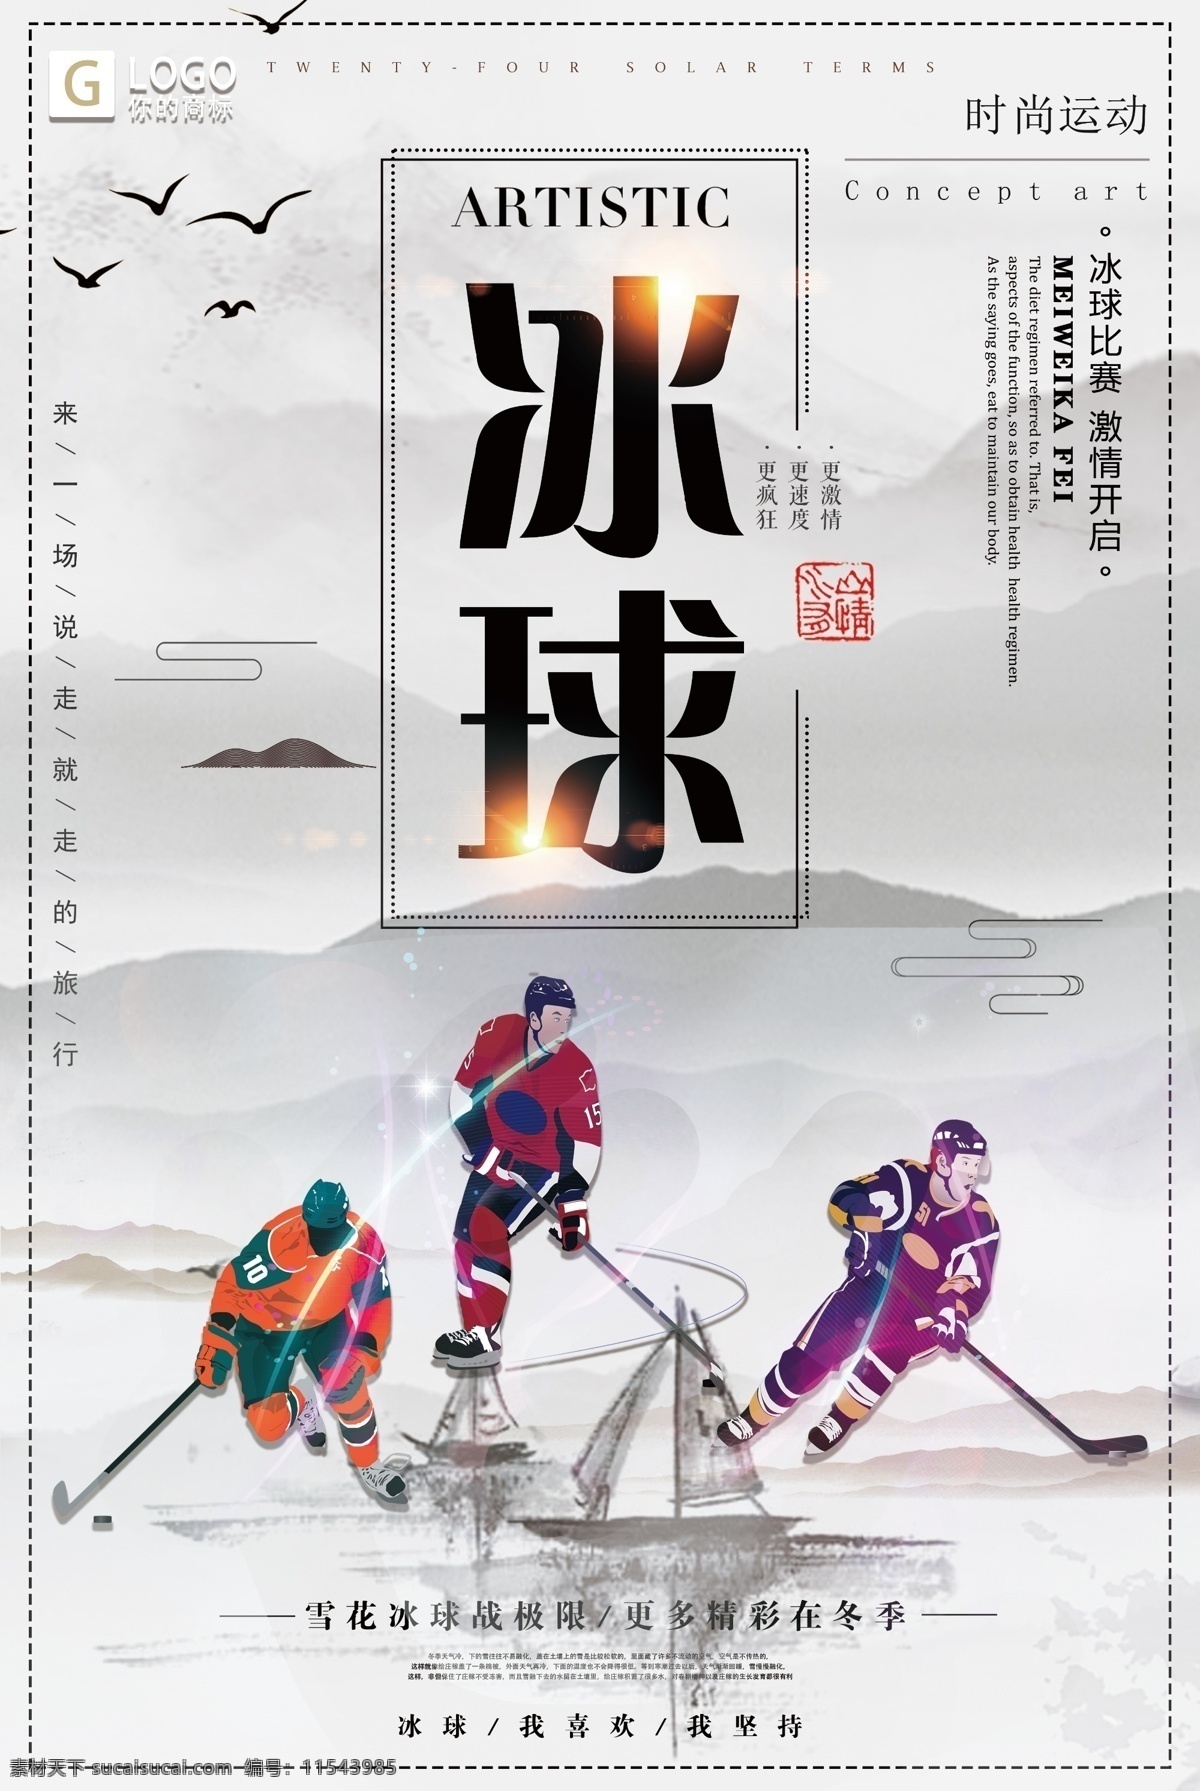 中国 风 大气 冰球 创意 宣传海报 创意设计 设计创意 大气中国 中国设计 大气设计 中国创意 中国大气 设计大气